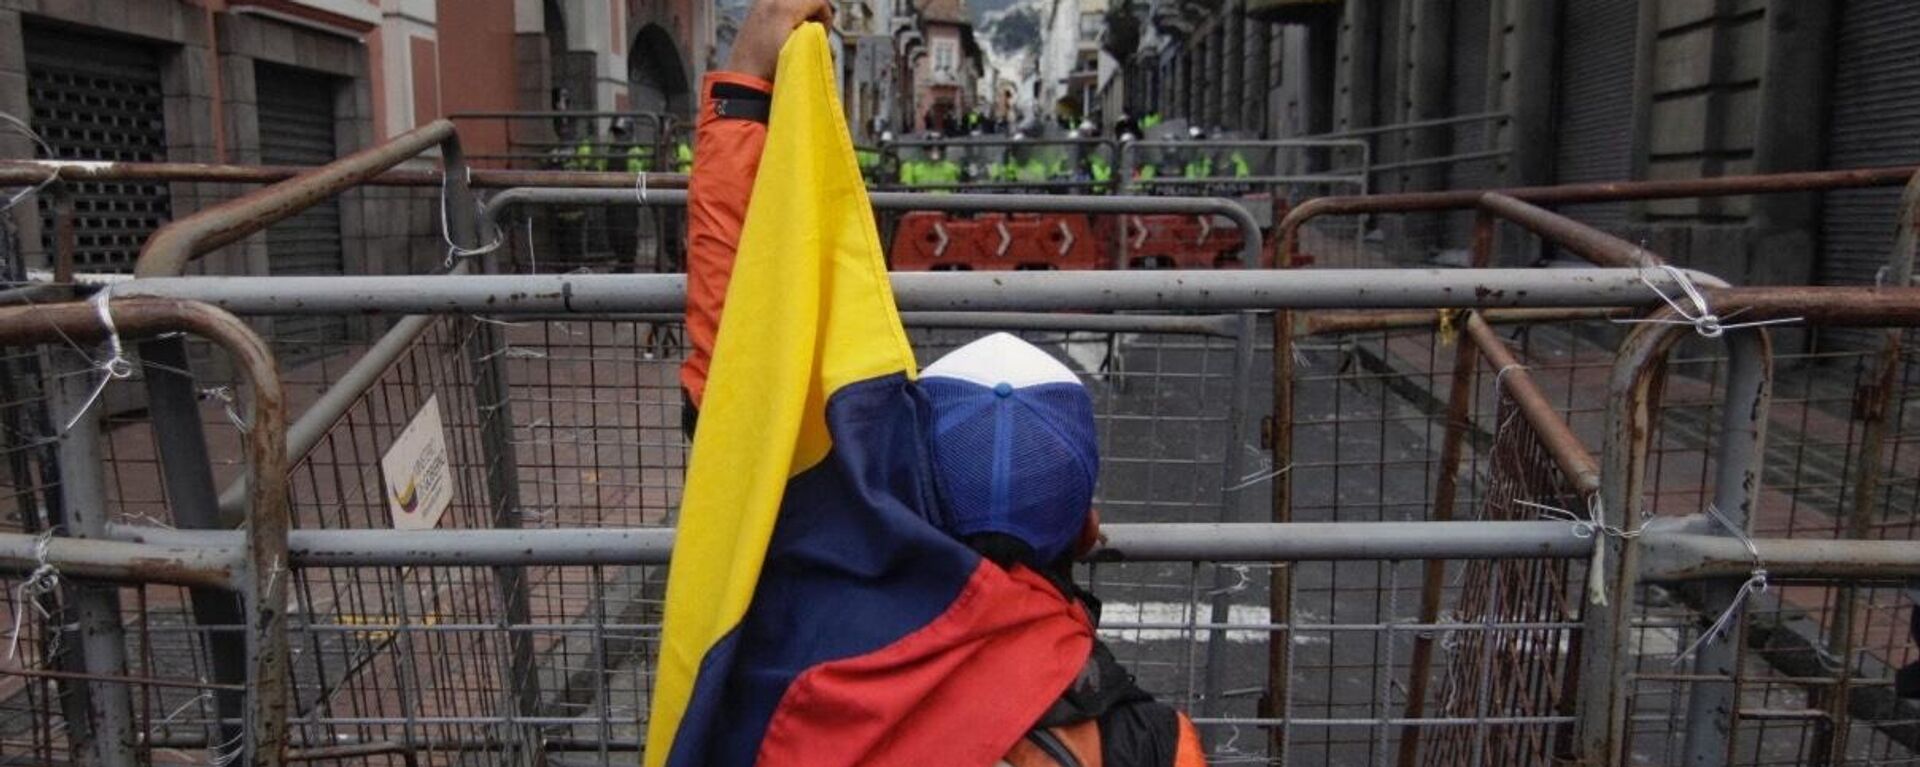 El bloqueo de calles durante las protestas en Ecuador - Sputnik Mundo, 1920, 30.06.2022